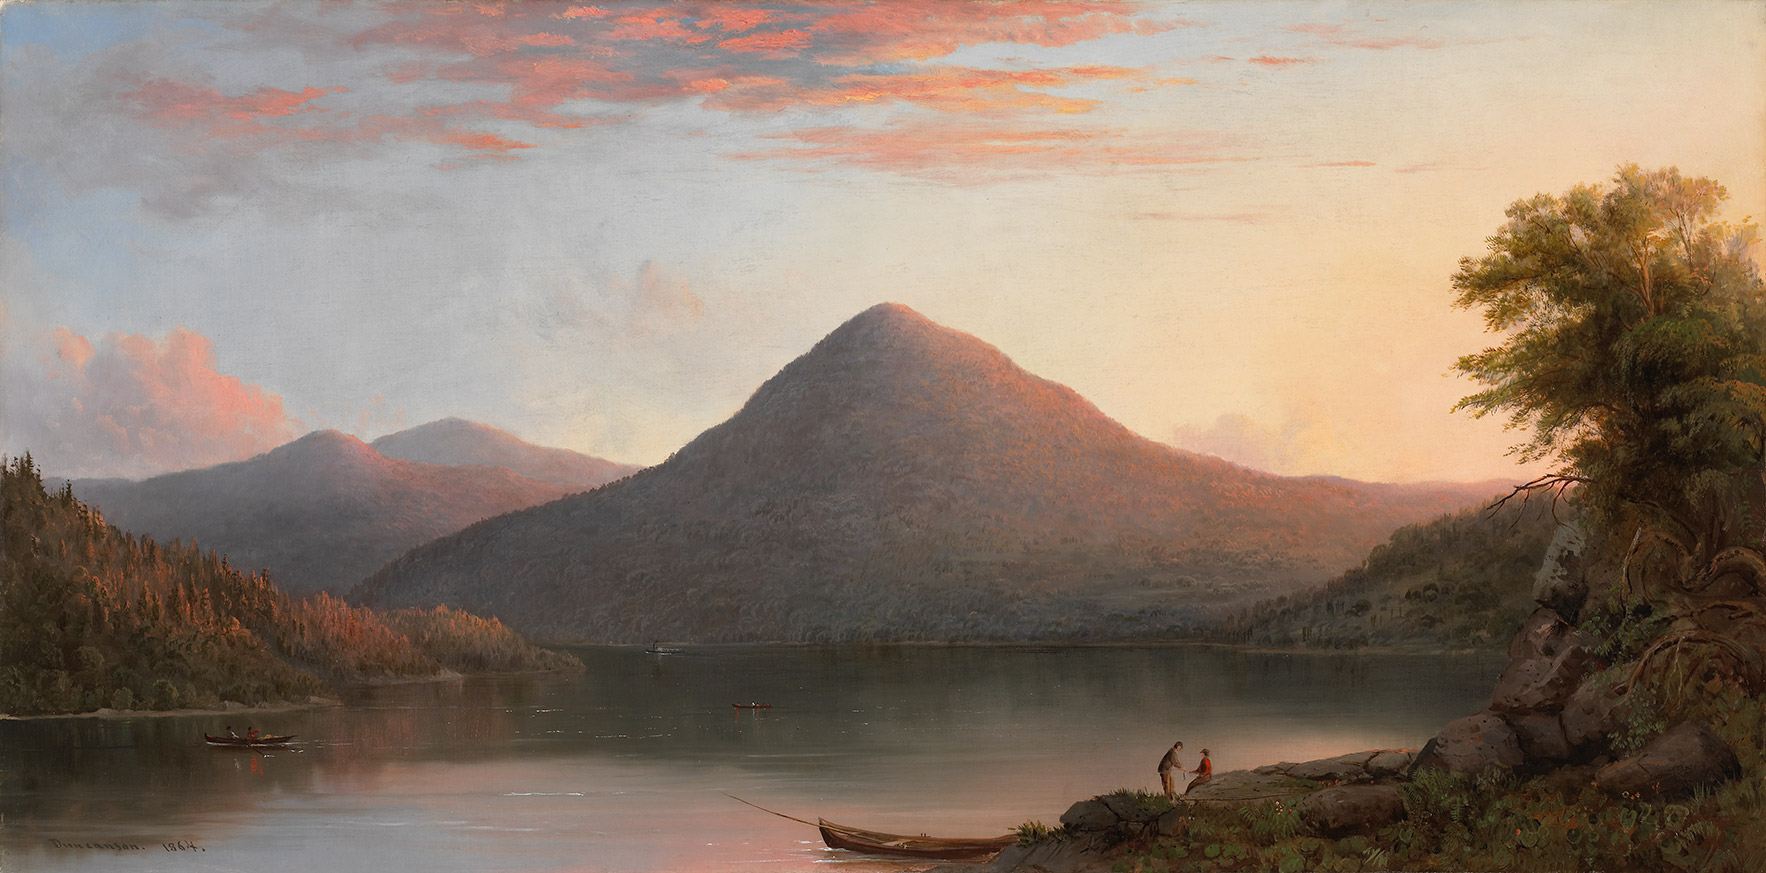 جبل رأس البومة by Robert Duncanson - 1864 م - 45.7 x 91.7 سم 